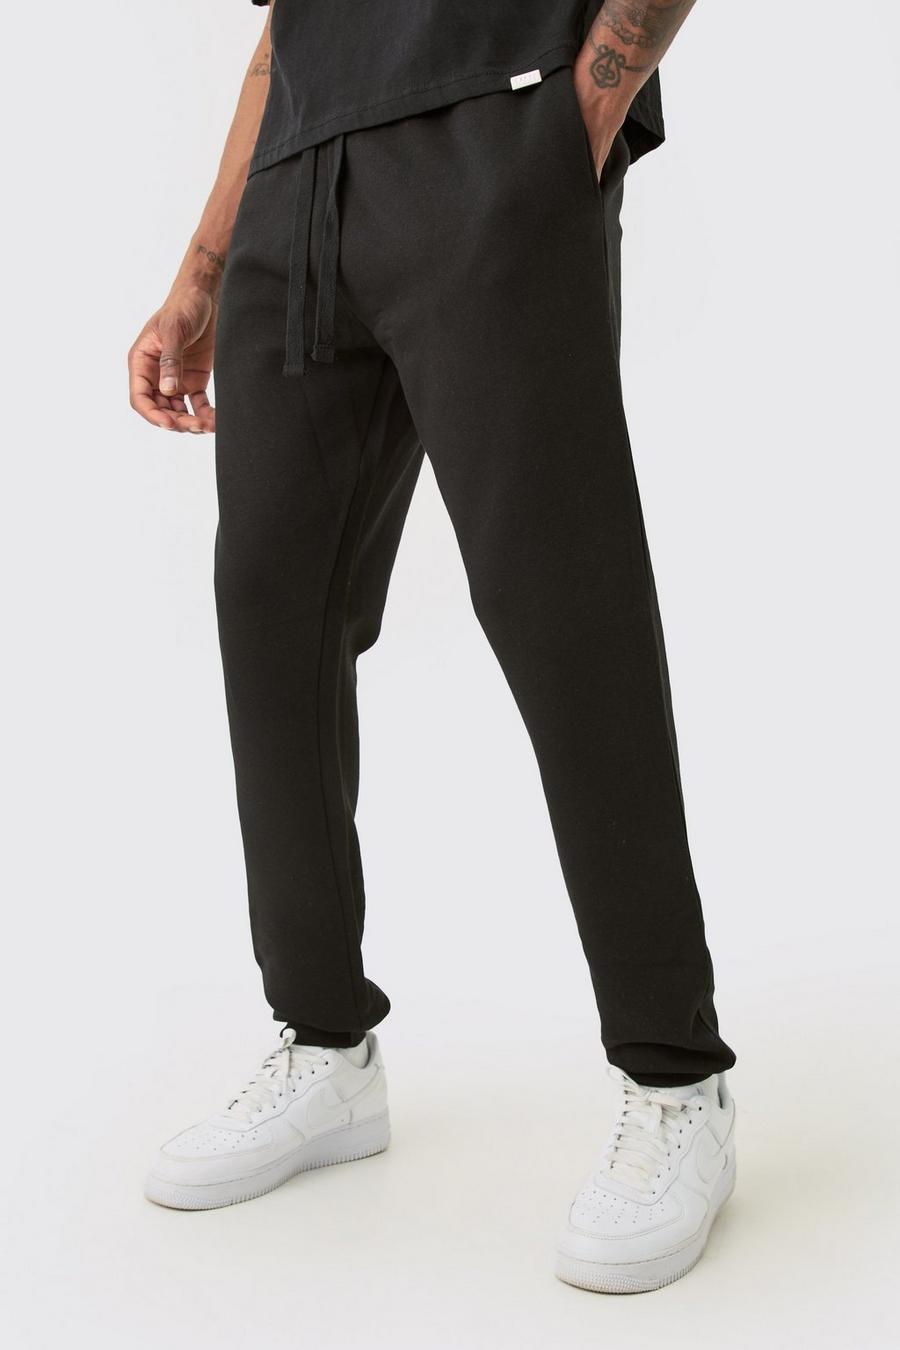 Pantalón deportivo Tall básico ajustado negro, Black image number 1